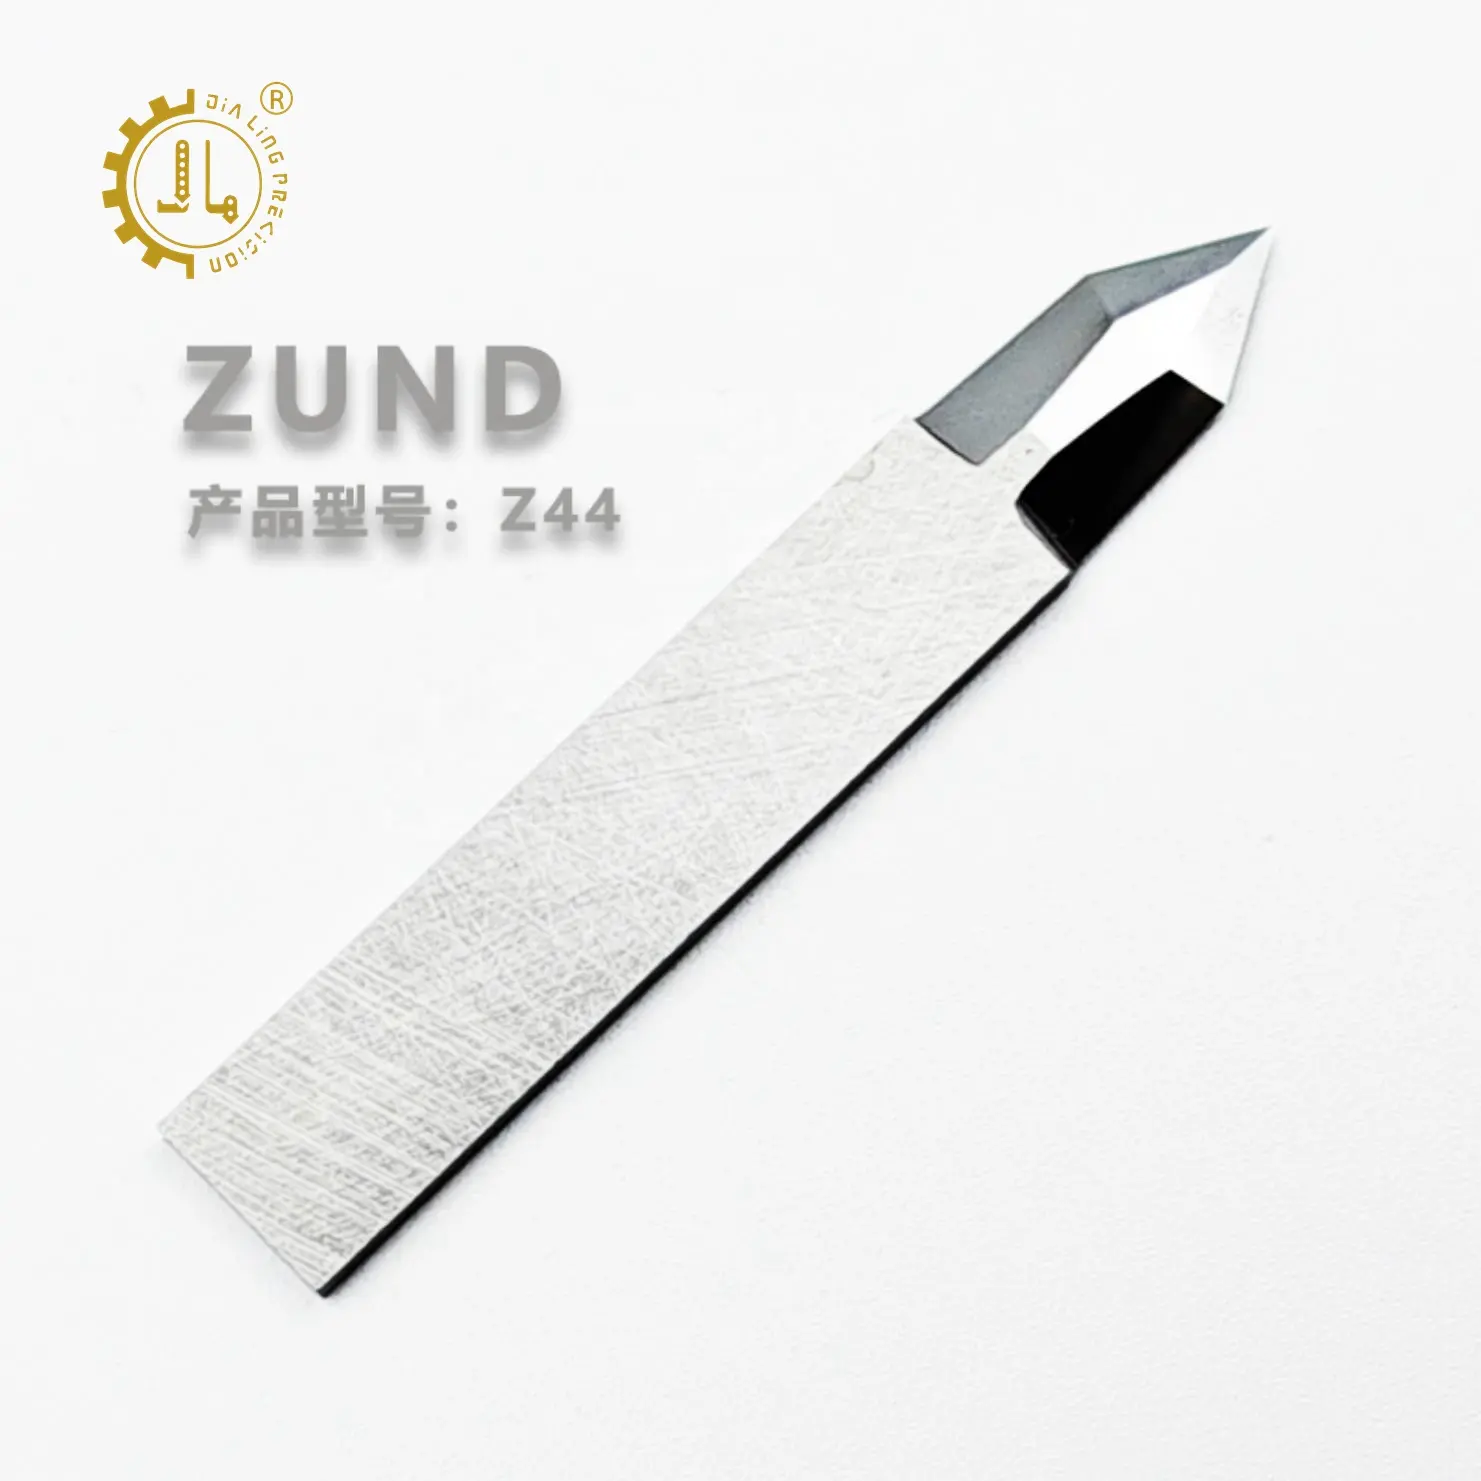 ZUND قطع Z12 25 ملليمتر CNC كربيد نوسحة شفرة ZUND قطع السكين الرقمية Z12 Z13 Z10 Z11 Z83 Z101 Z44